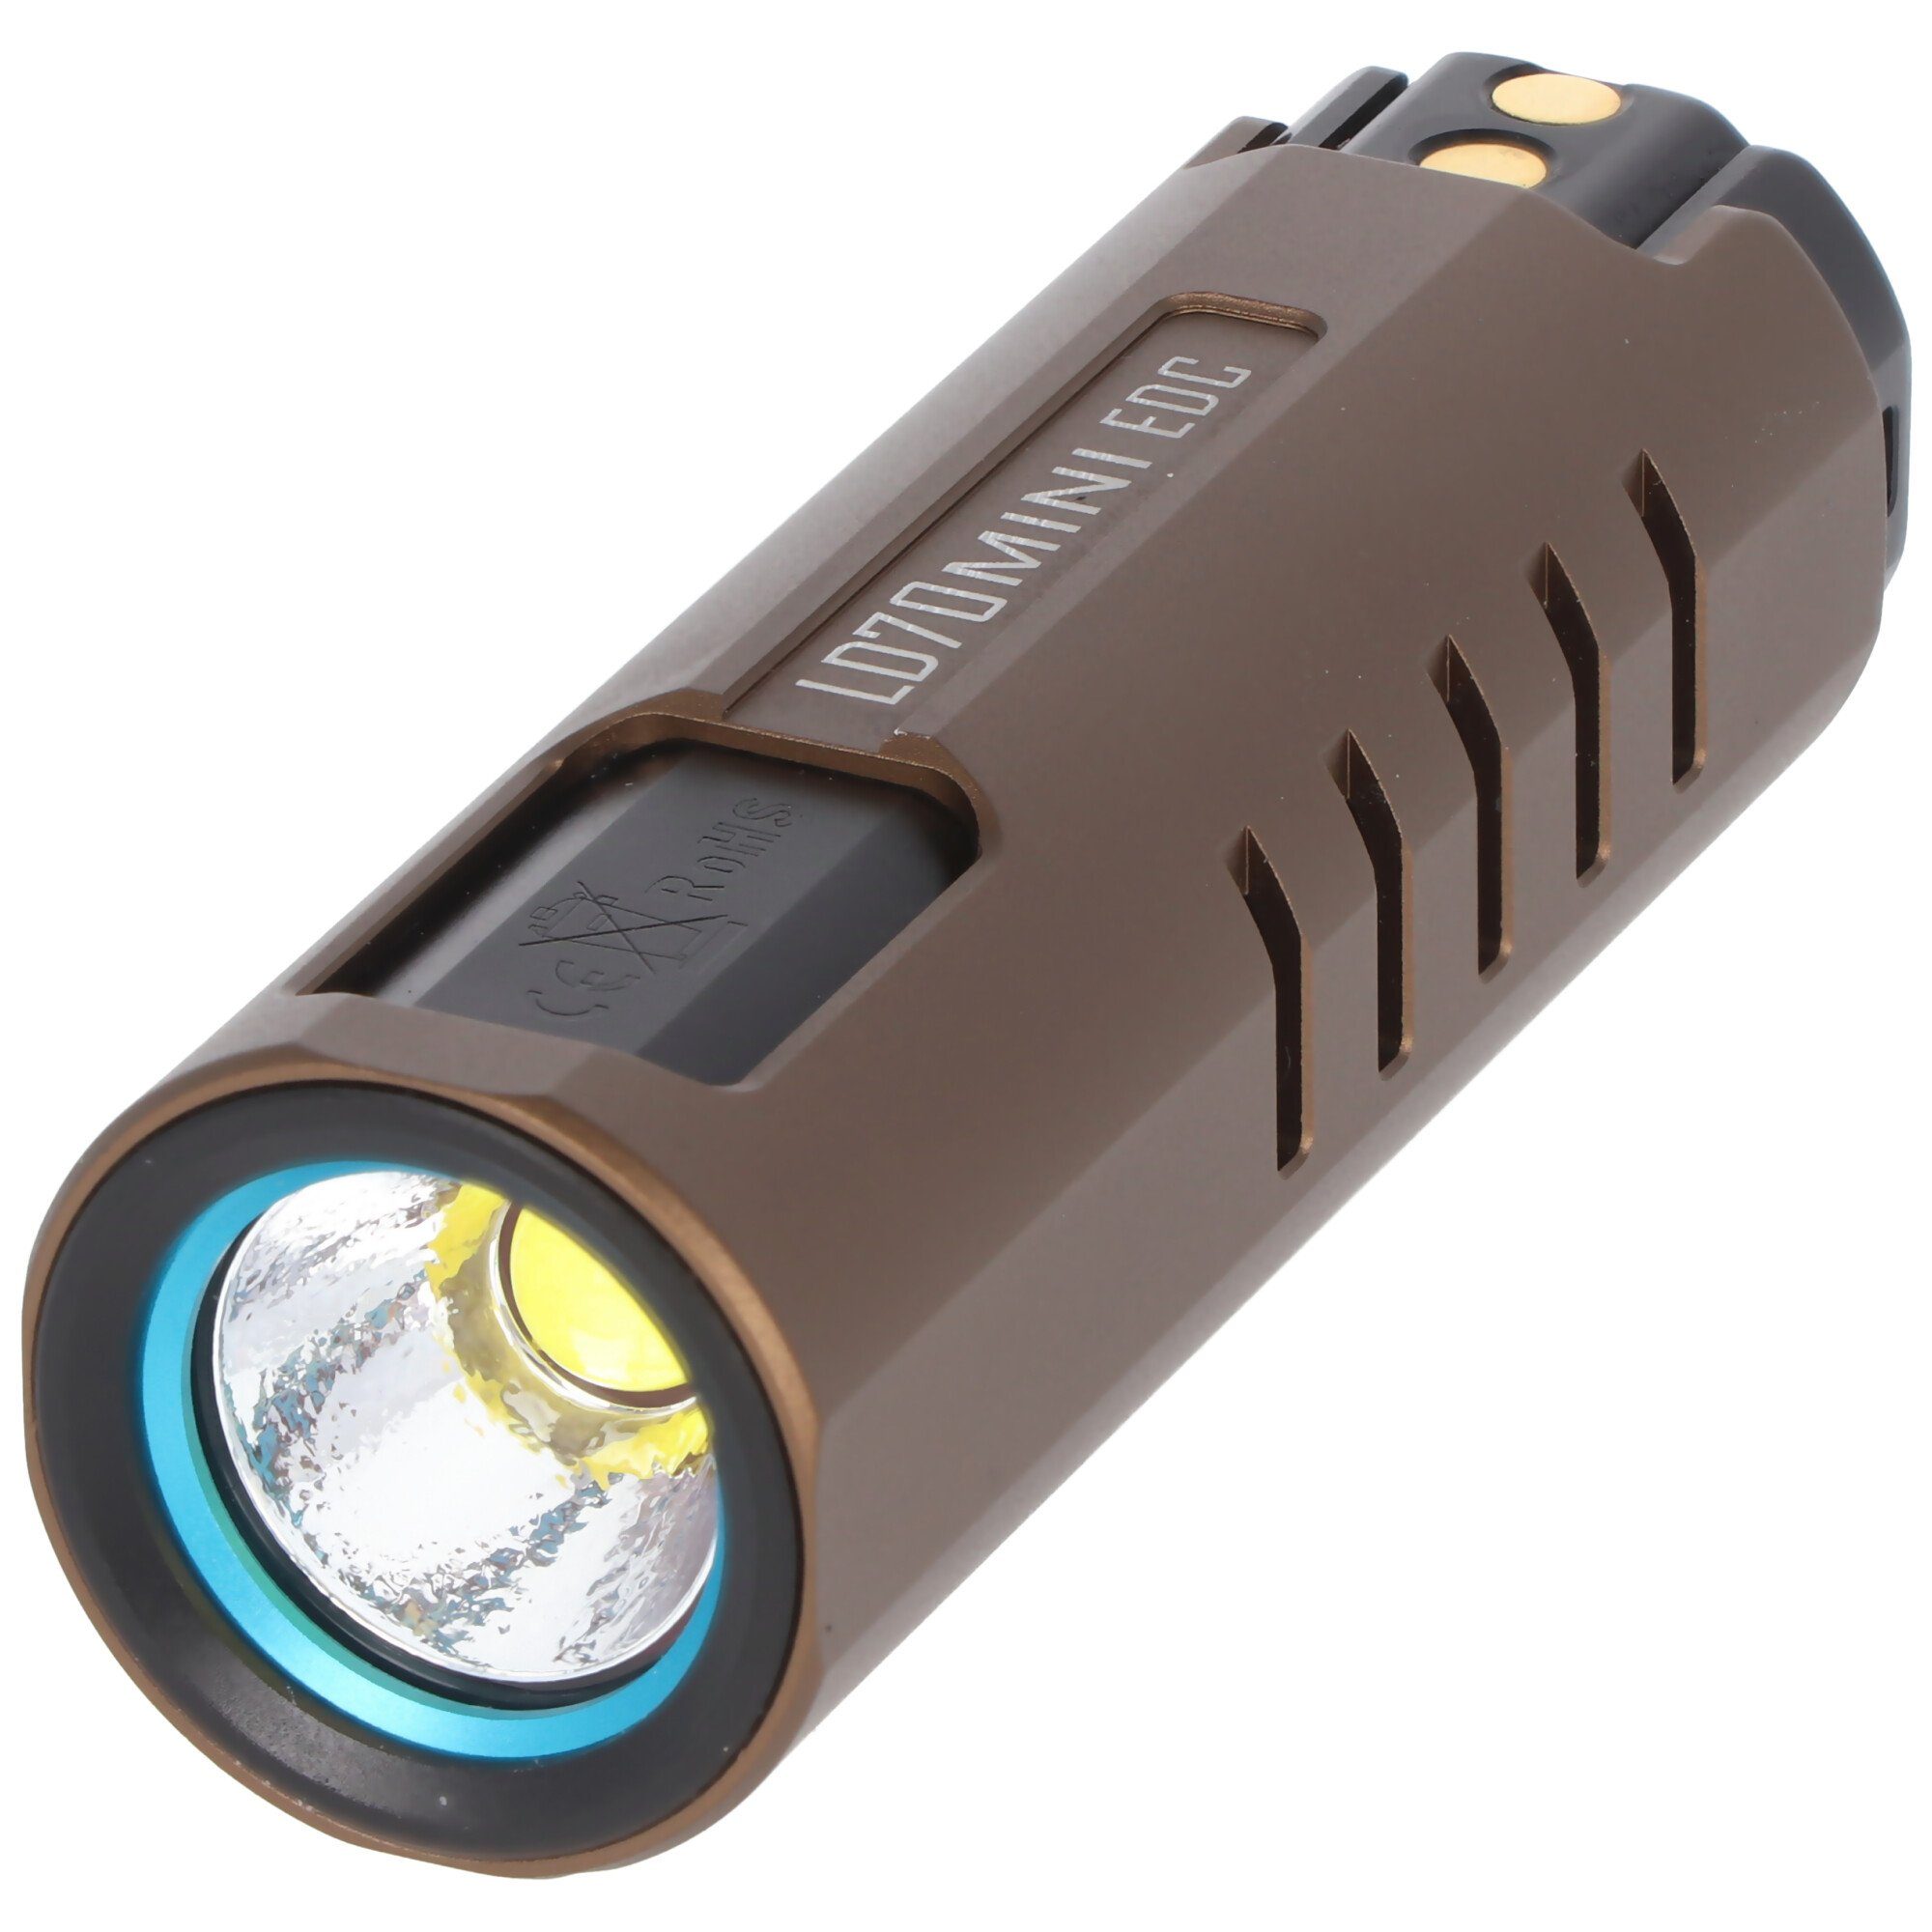 Imalent Imalent Lumen mit Mini Arbeitsleuchte eine LED-Taschenlampe LD70 Leucht EDC 4000 und